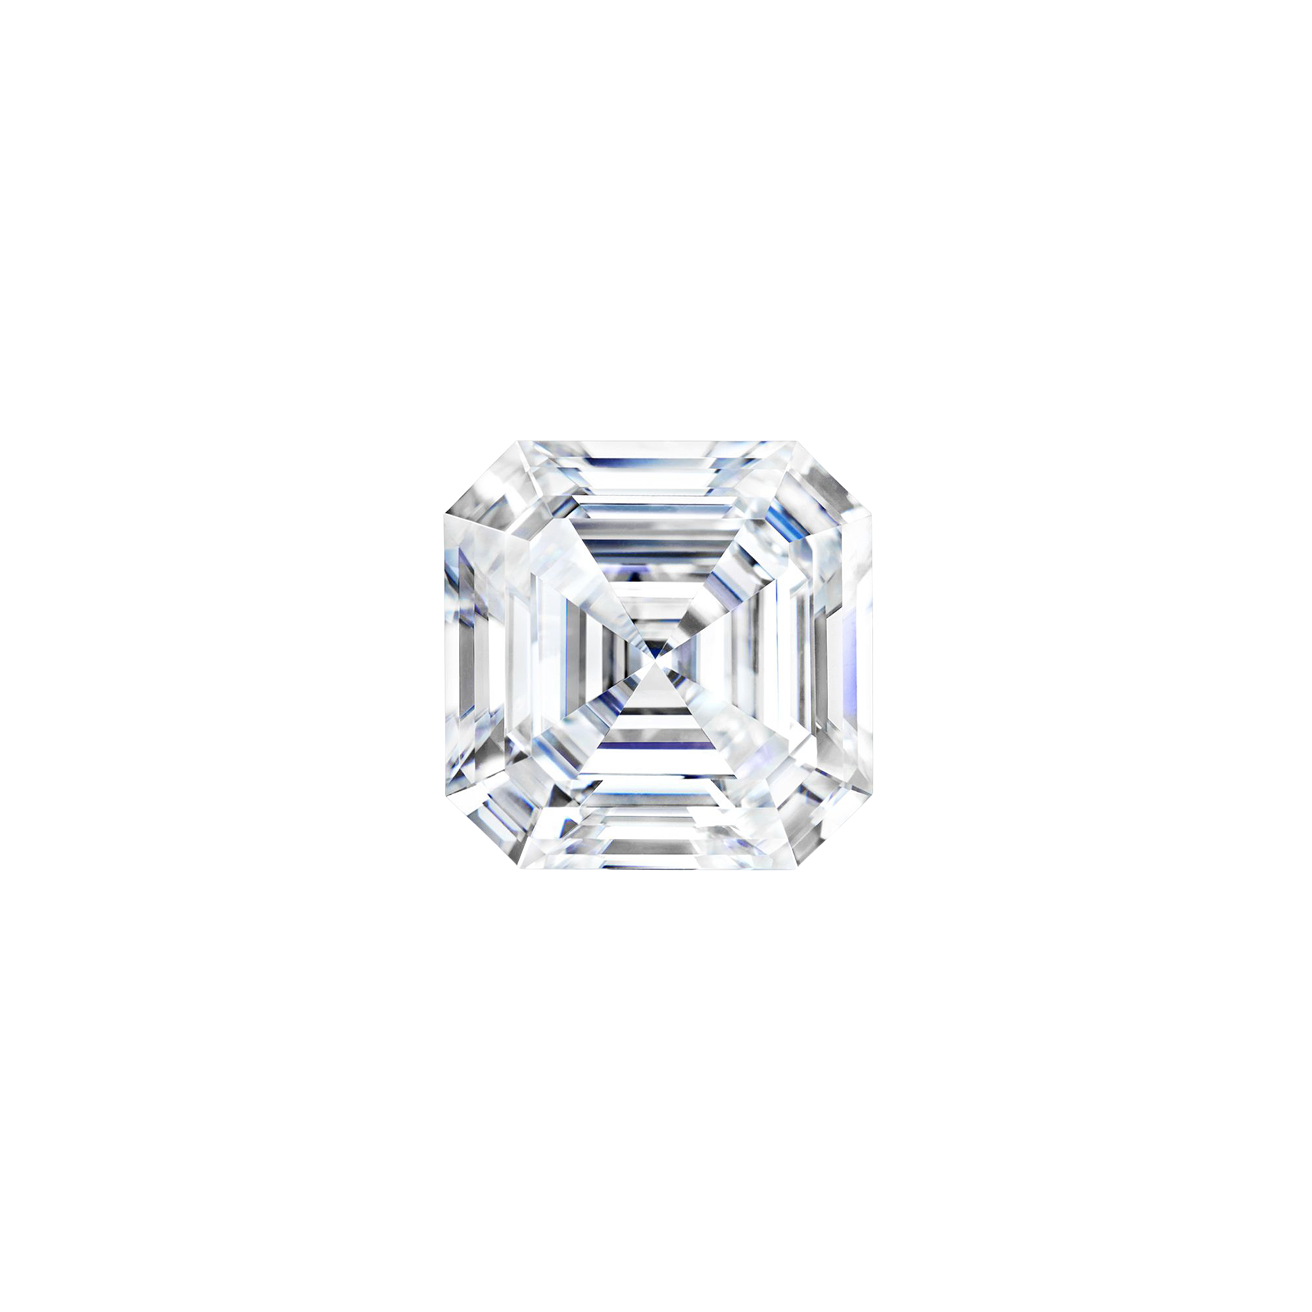 The Asscher Diamond